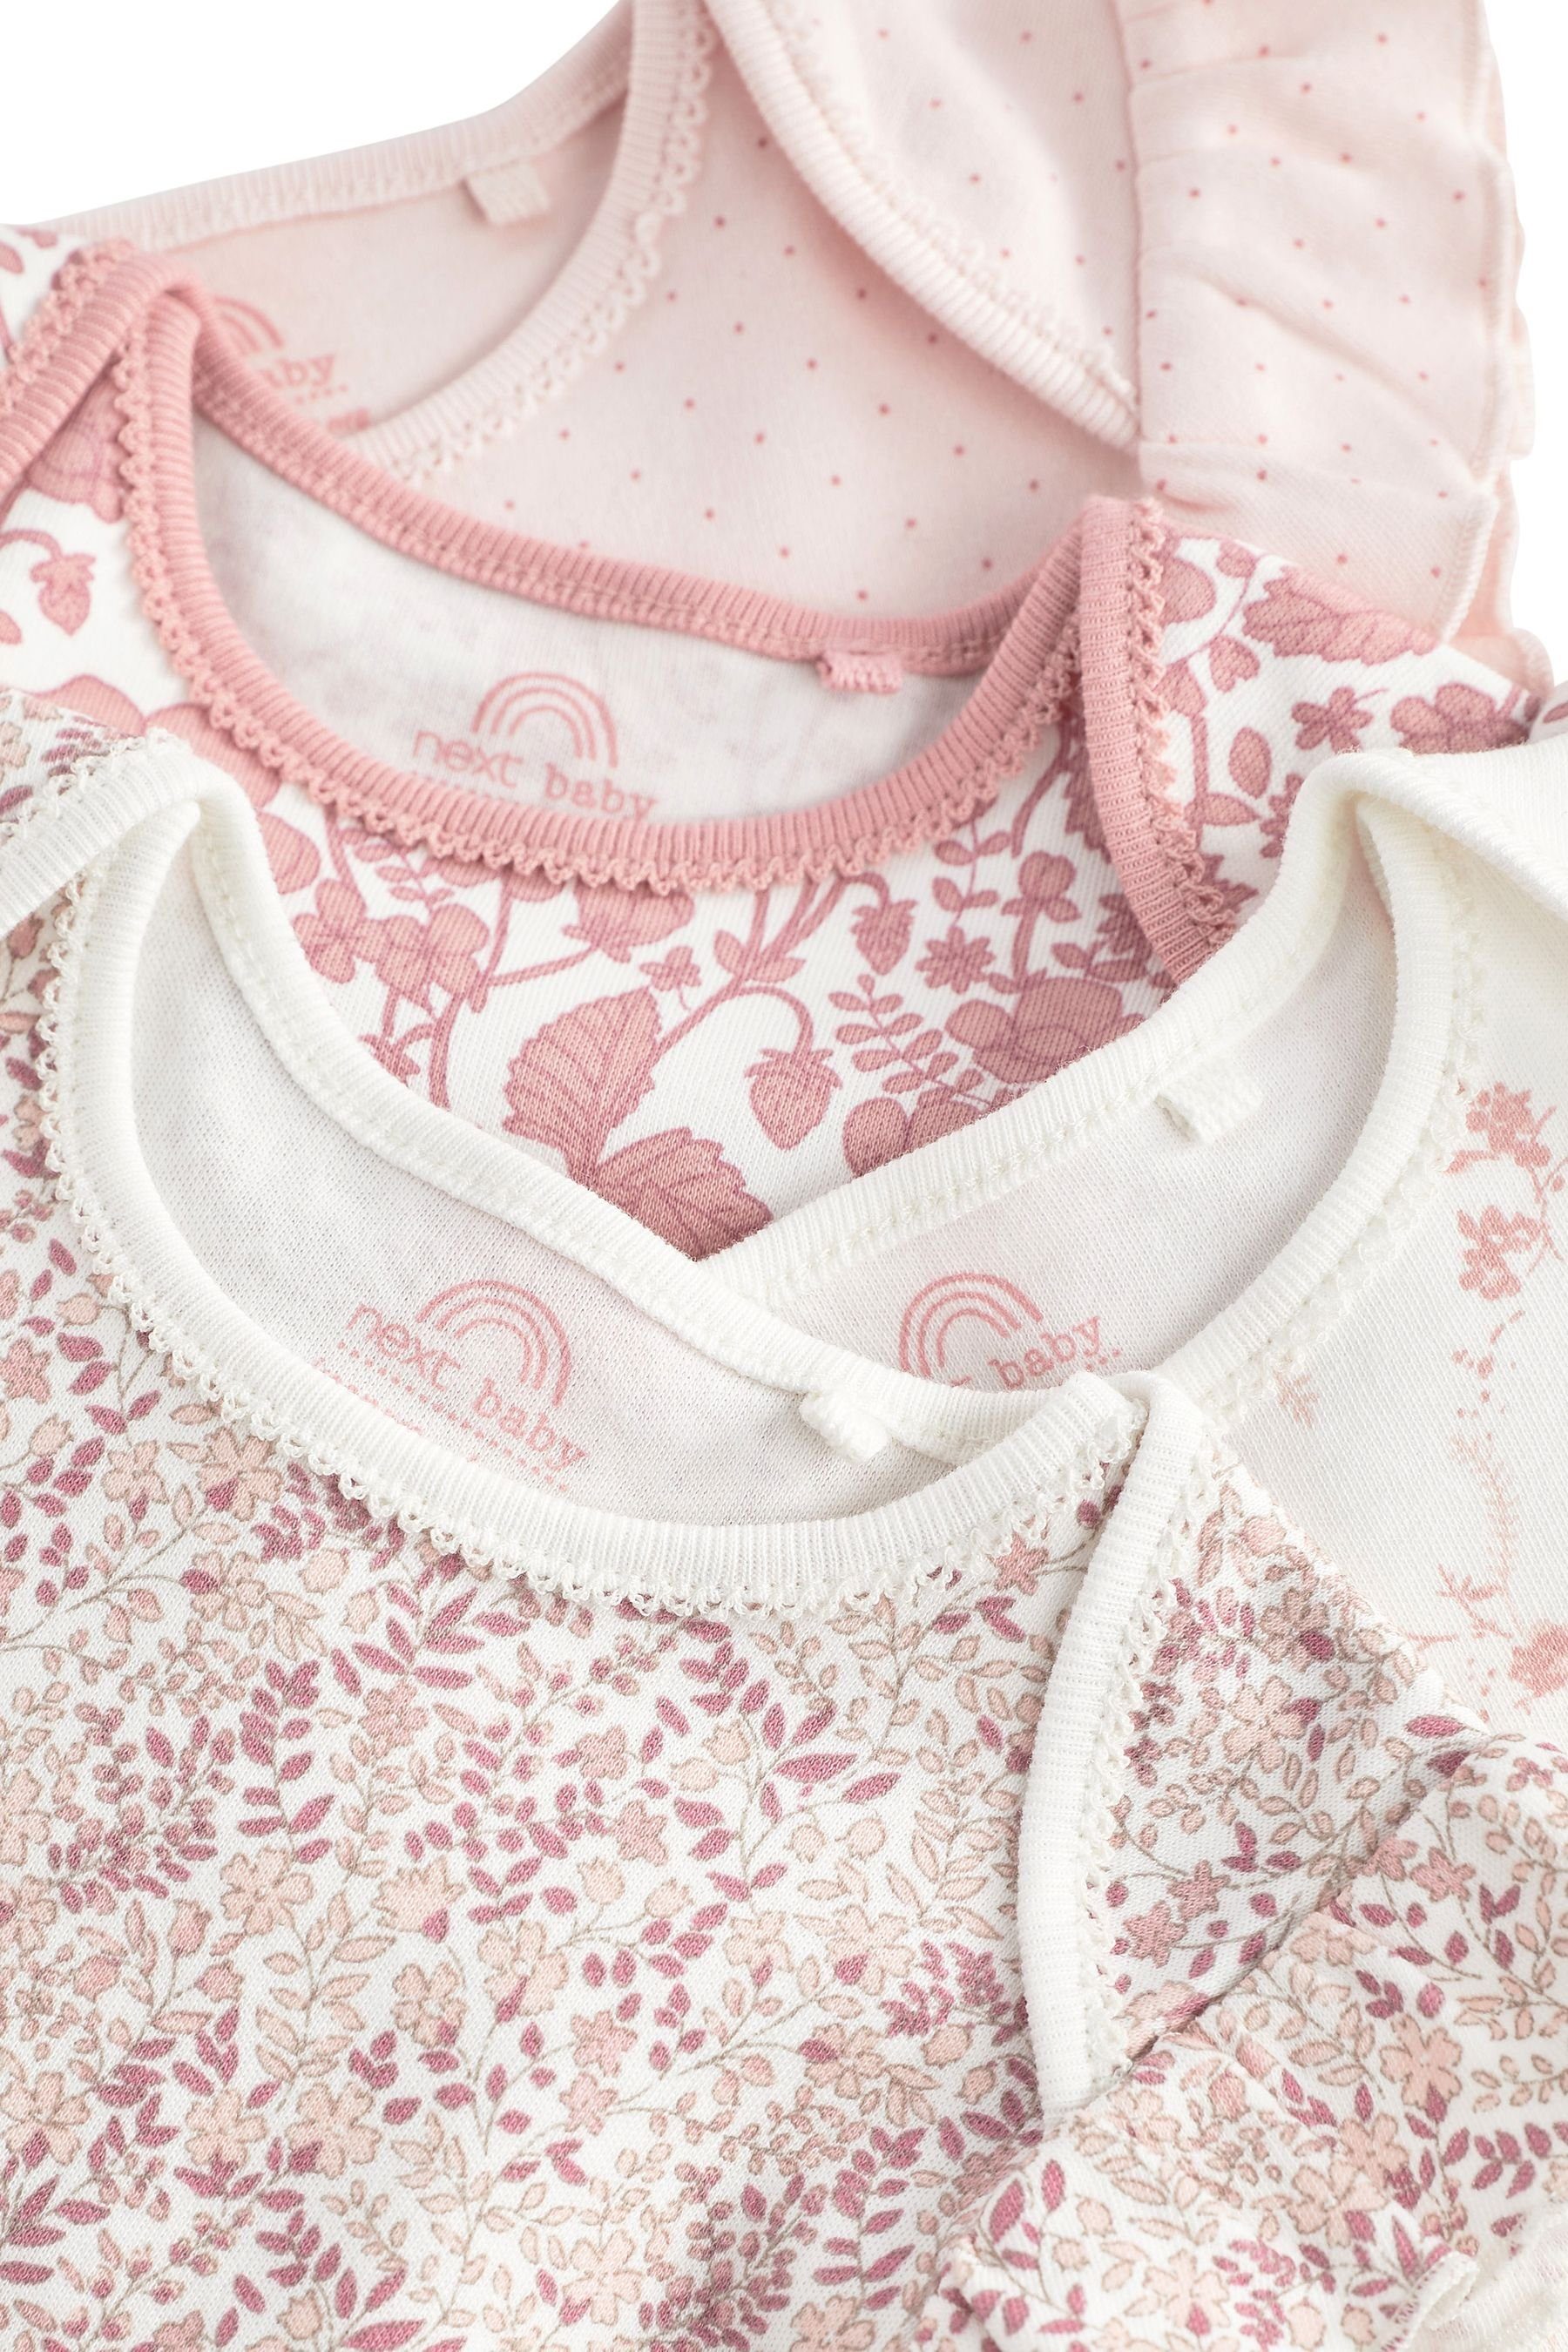 Next Strampler Baby-Strampelanzüge, Pale 4er-Pack Pink (4-tlg) Floral